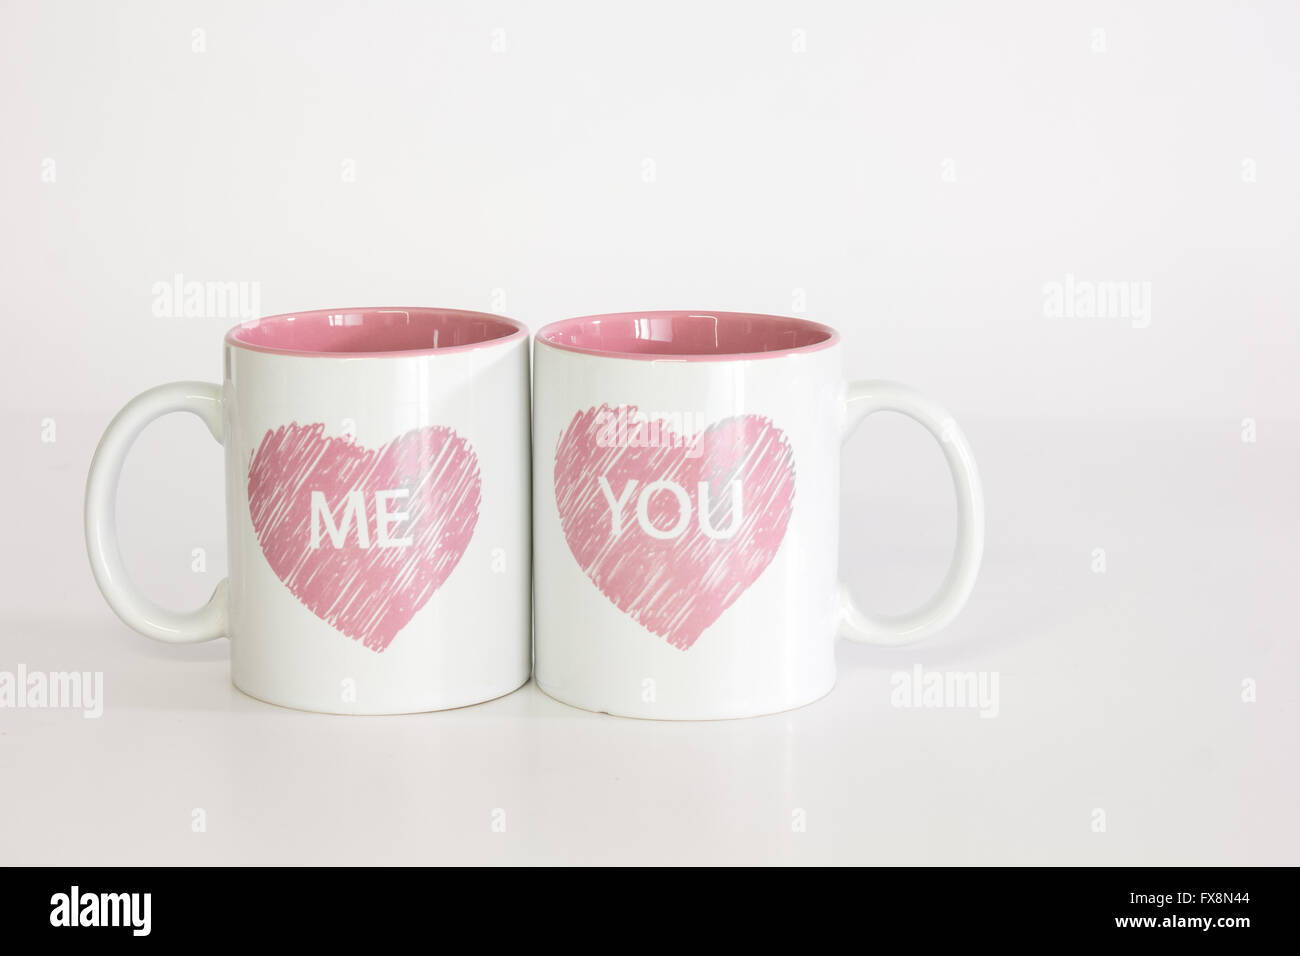 Bianco due tazze da caffè con un logo di cuore spinto insieme vicino l'ortografia 'me'. Isolati contro un puro sfondo bianco Foto Stock